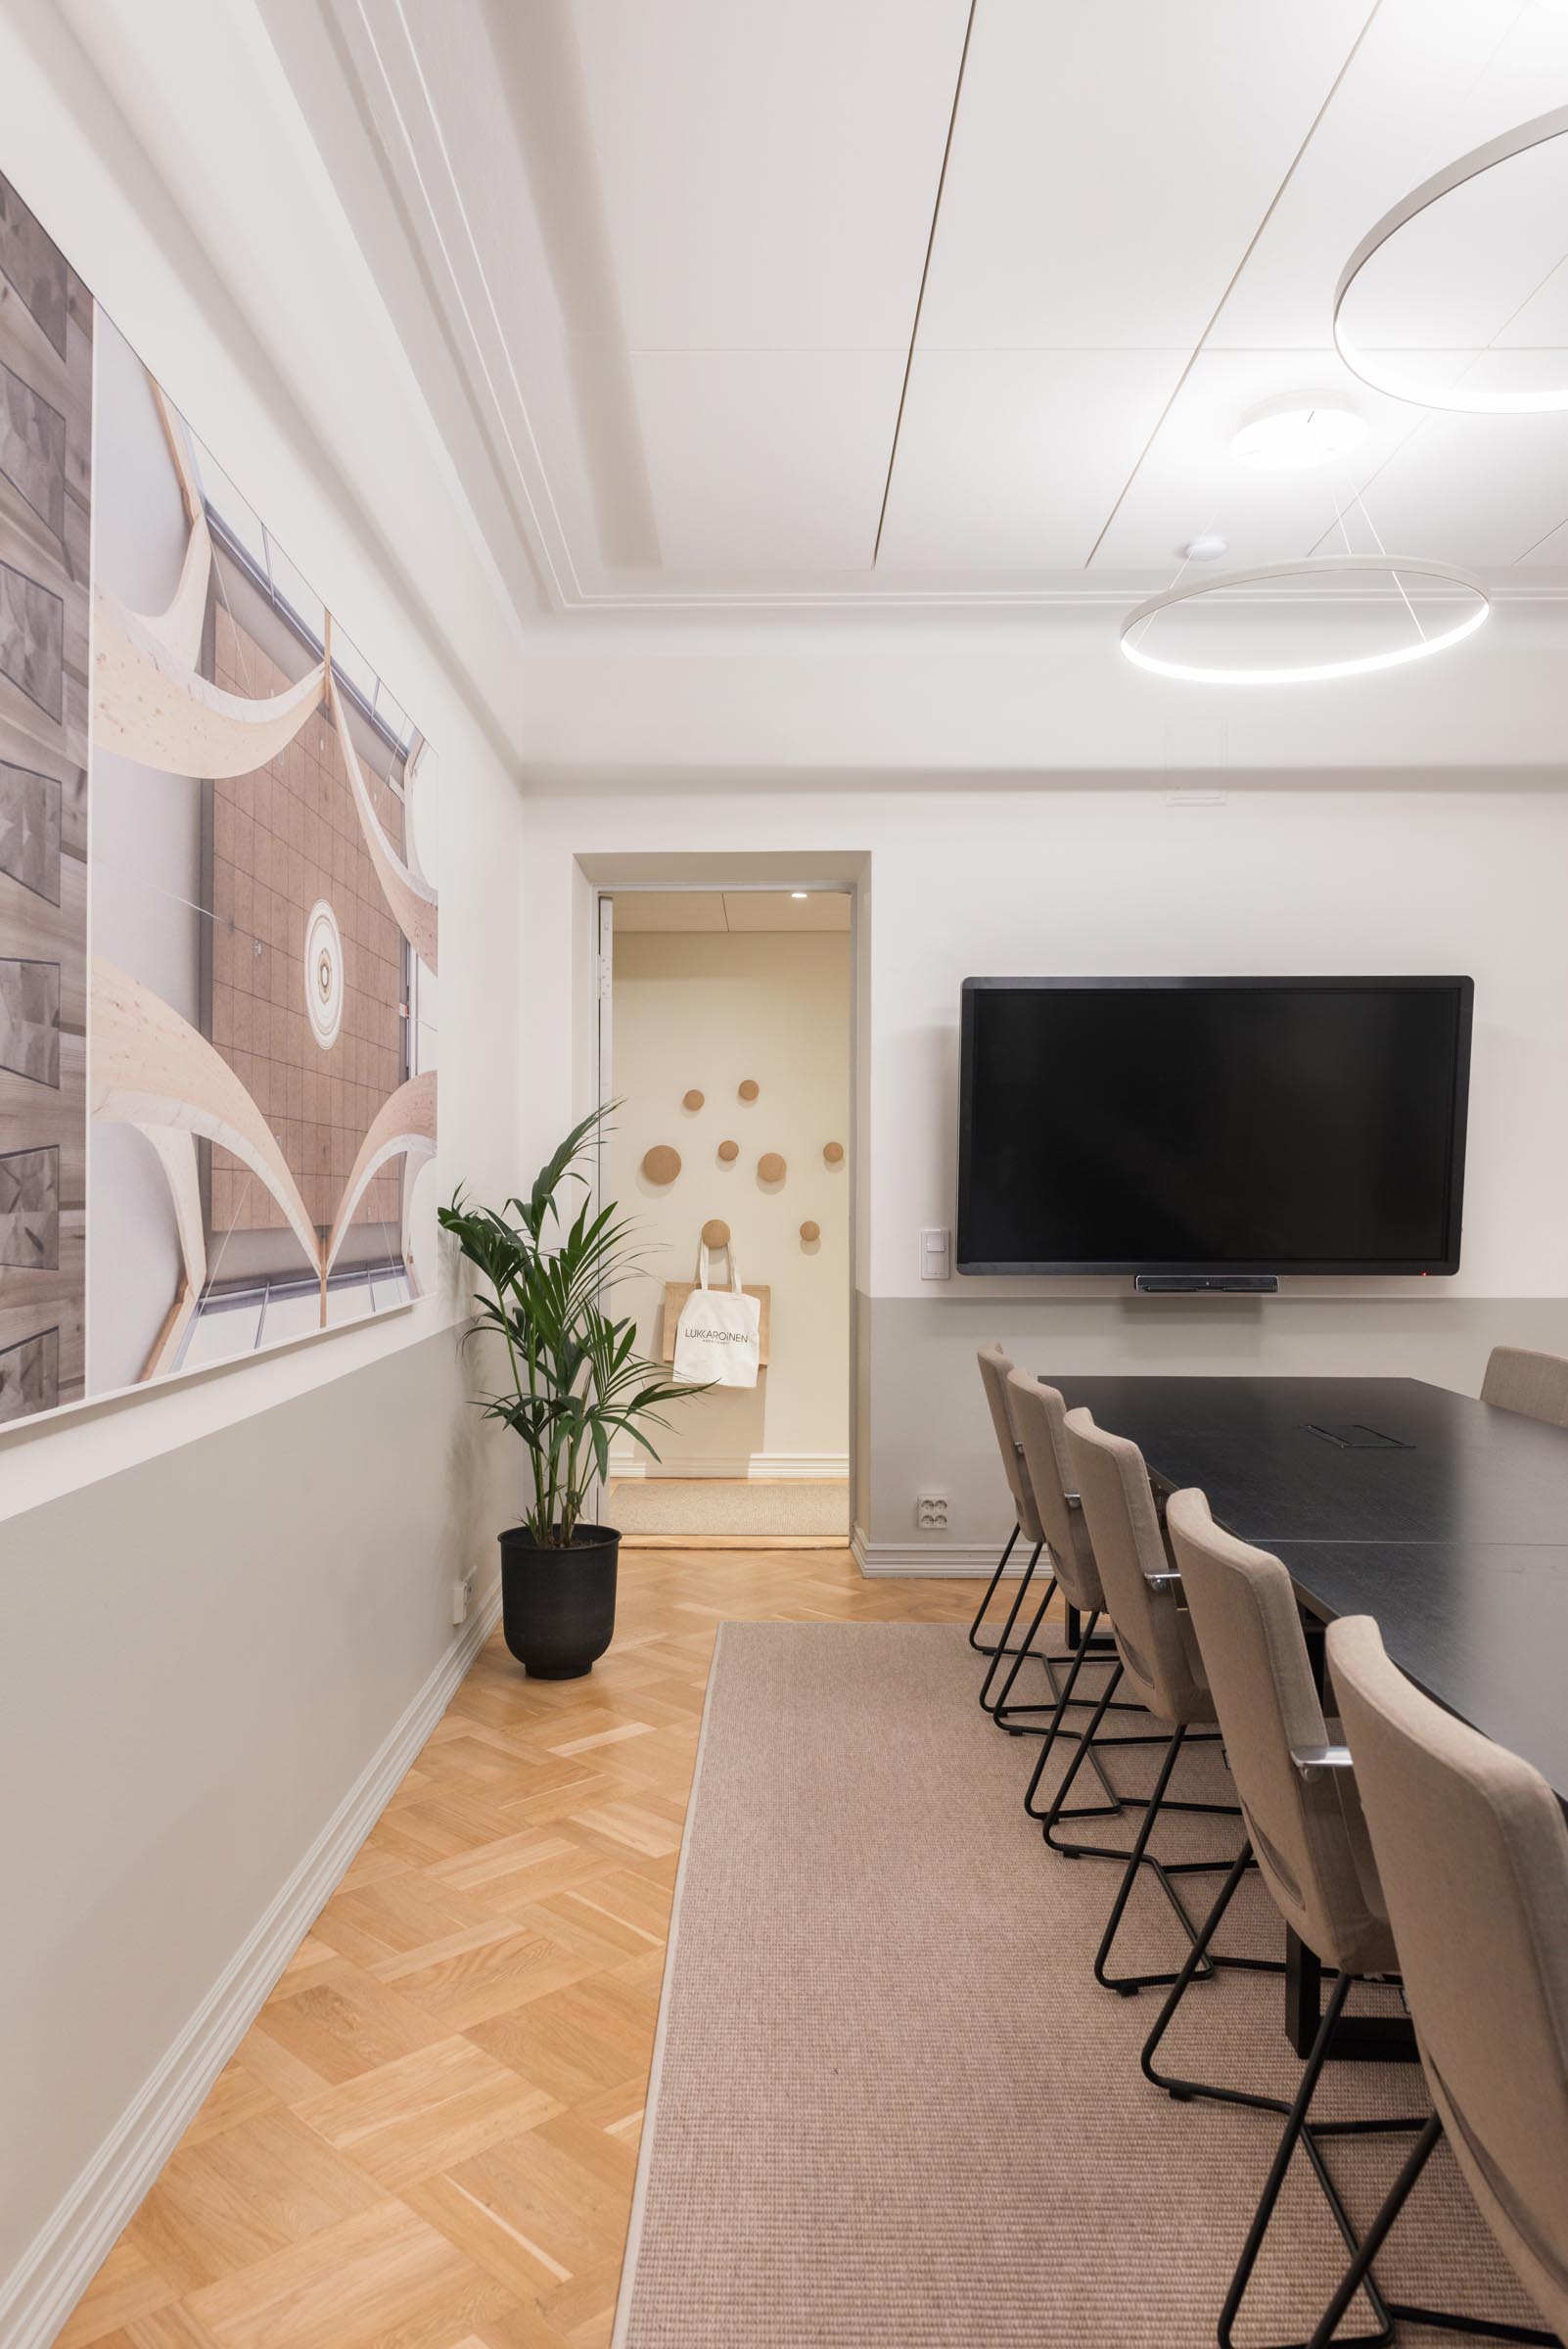 Lukkaroisen Helsingin toimiston uusi neuvottelumaailma, neuvotteluhuone, jossa pitkä pöytä tuoleineen ja tv.